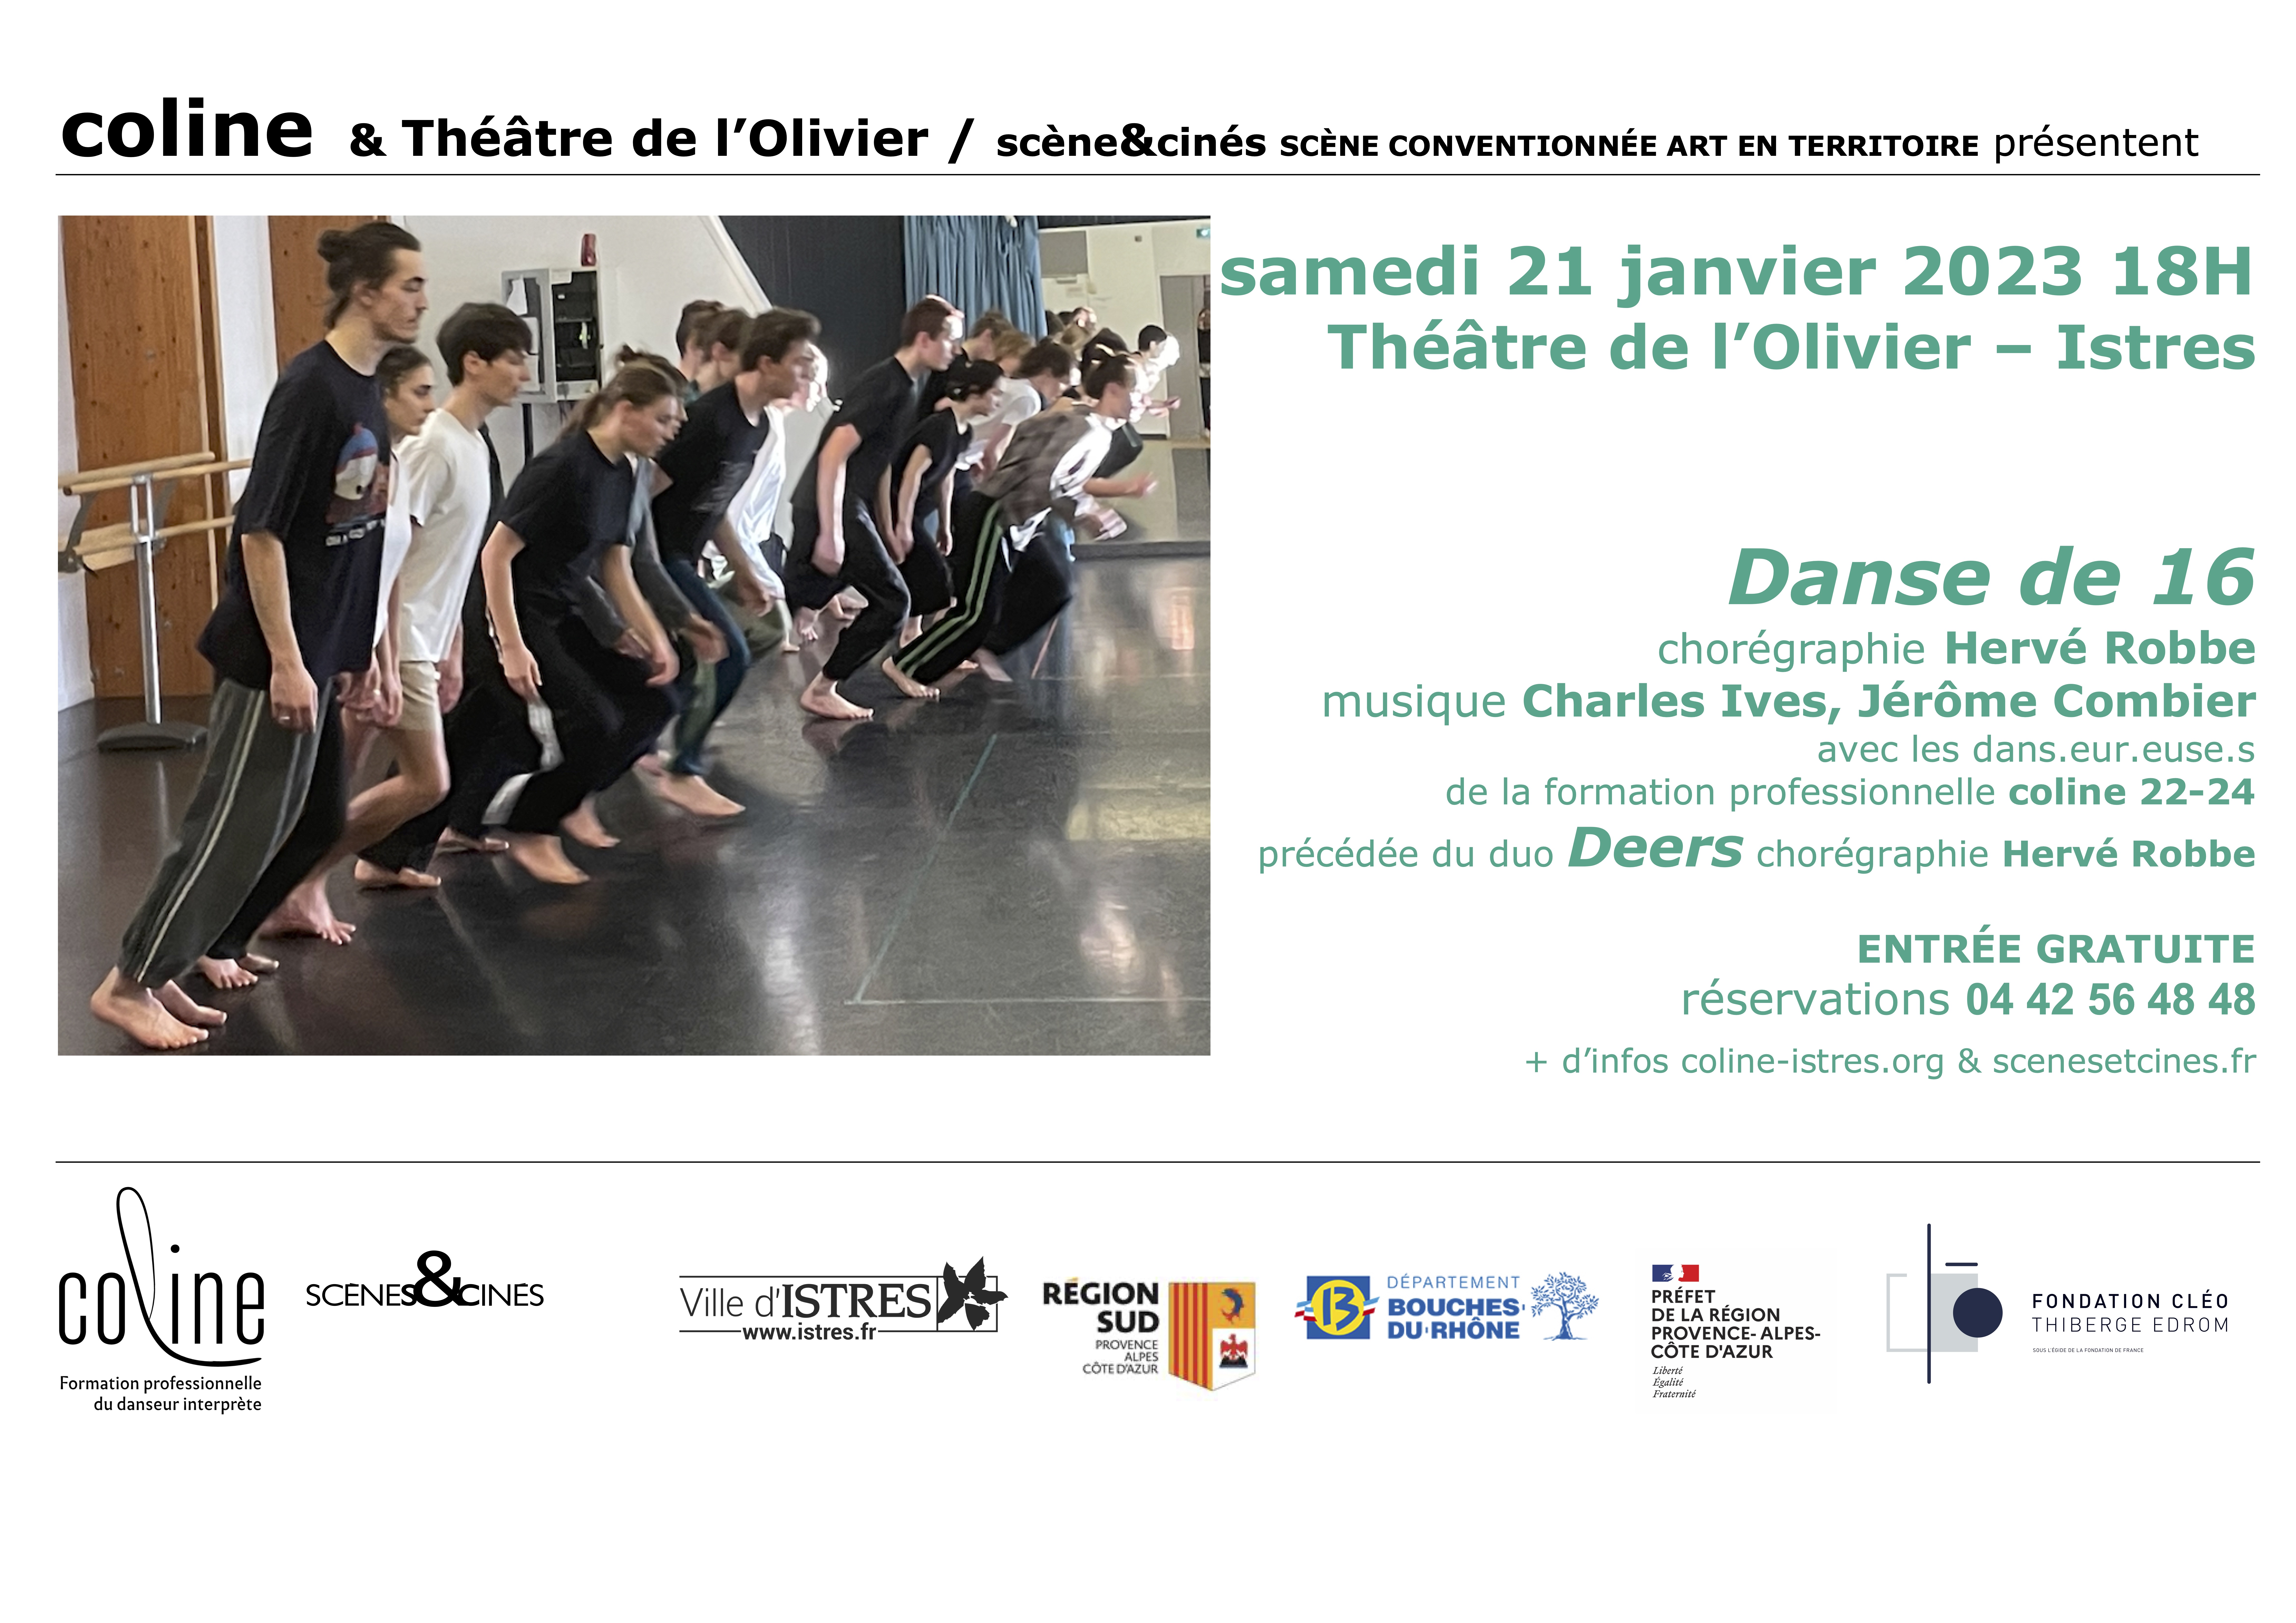 COLINE I Danse de 16 + Deers chorégraphie Hervé Robbe Samedi 21 janvier - 2023 18h Théâtre de l'Olivier - Istres